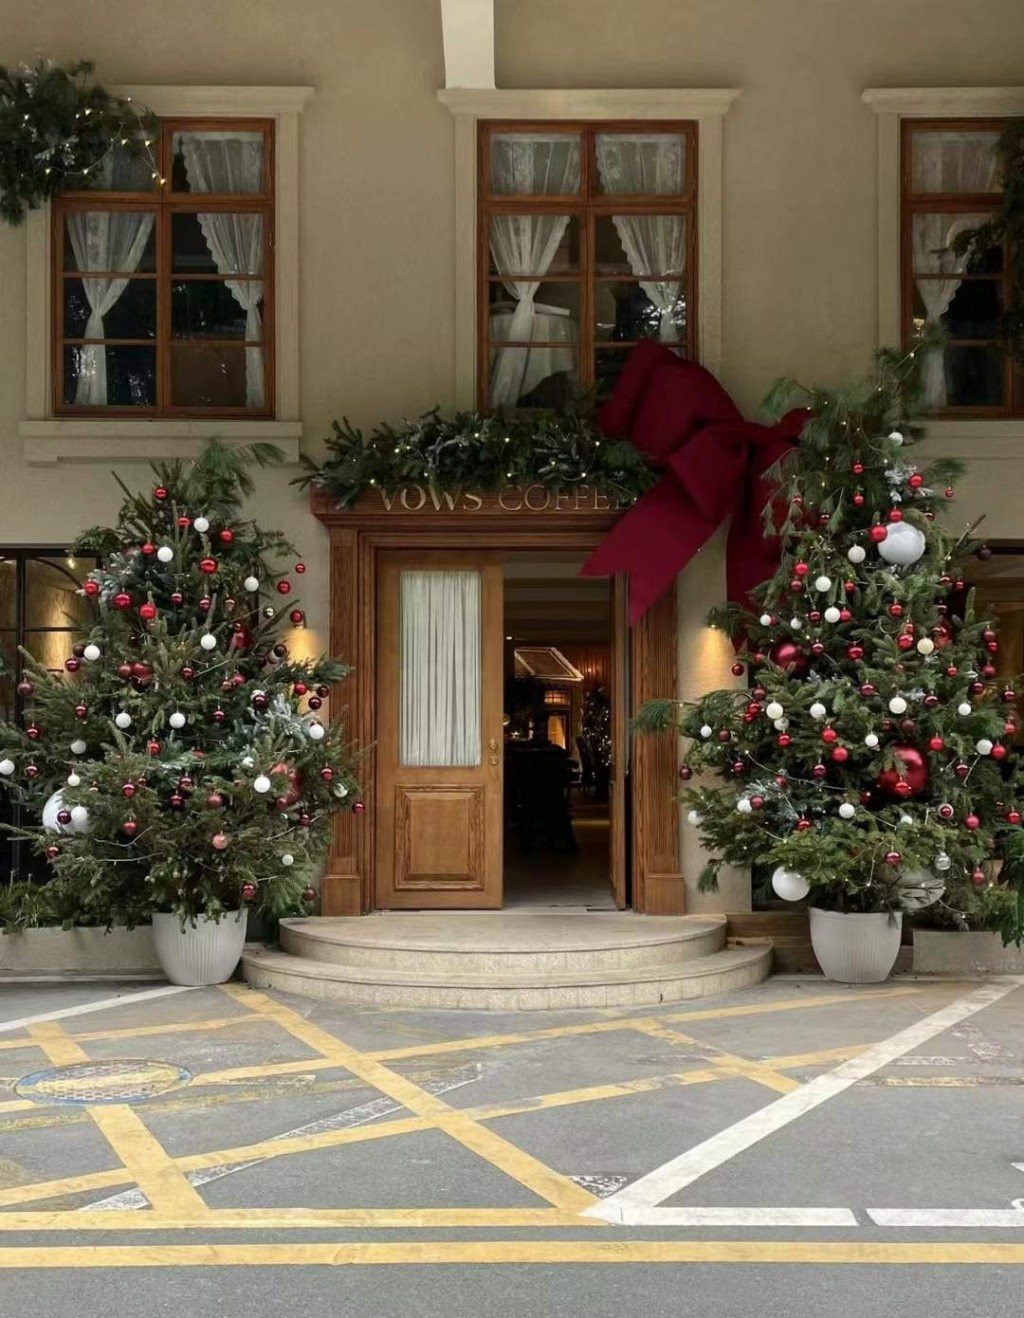 華僑城VOWS Coffee今年入口處則換上巨型聖誕樹為主題的佈置，店內延續聖誕樹的主題佈置。